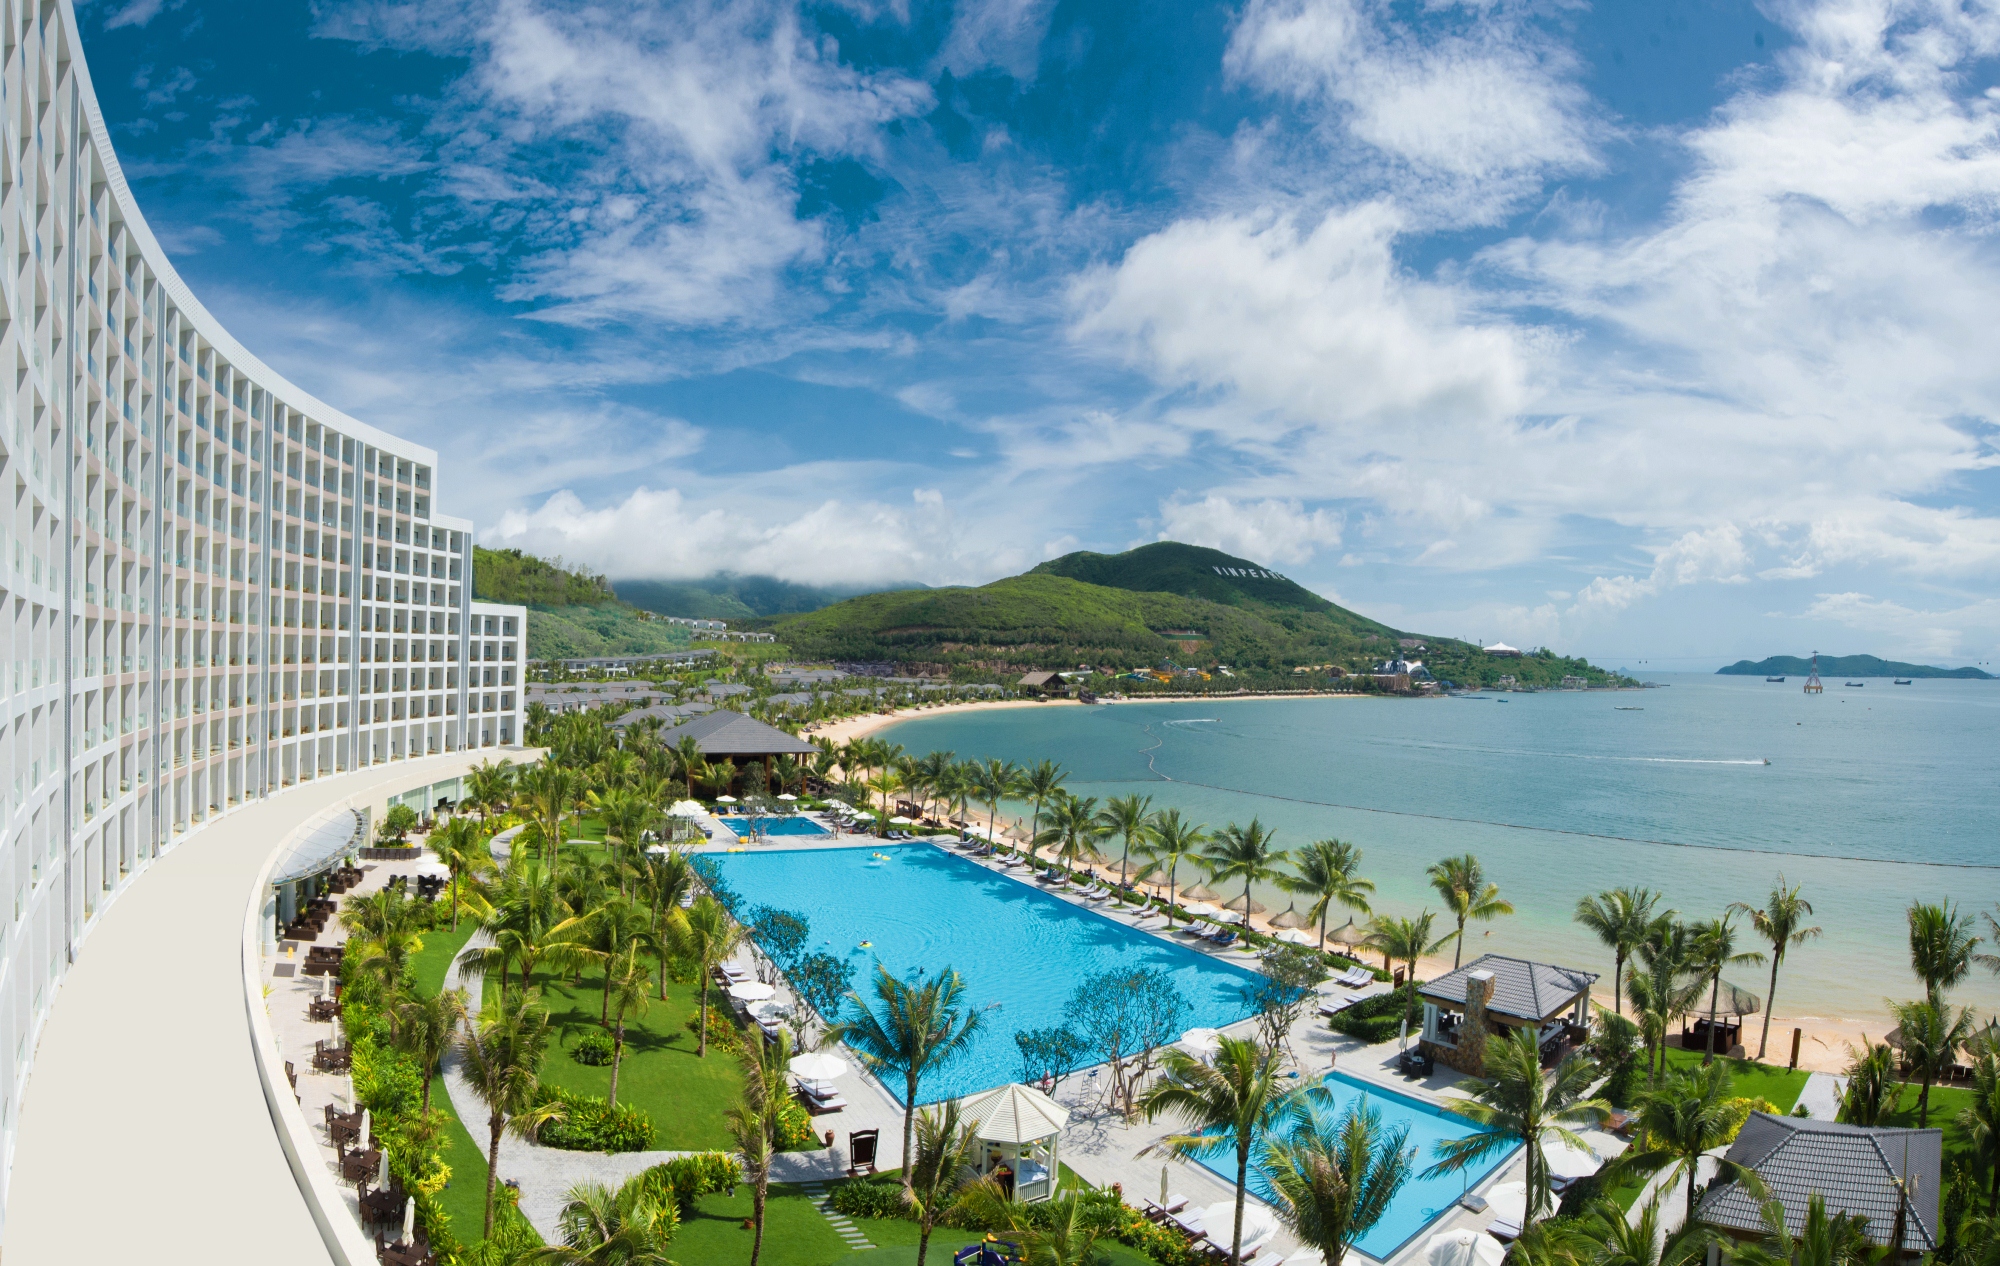 Top hotels in Vietnam - Nha Trang City - Vinpearl Resort & Spa Nha Trang Bay